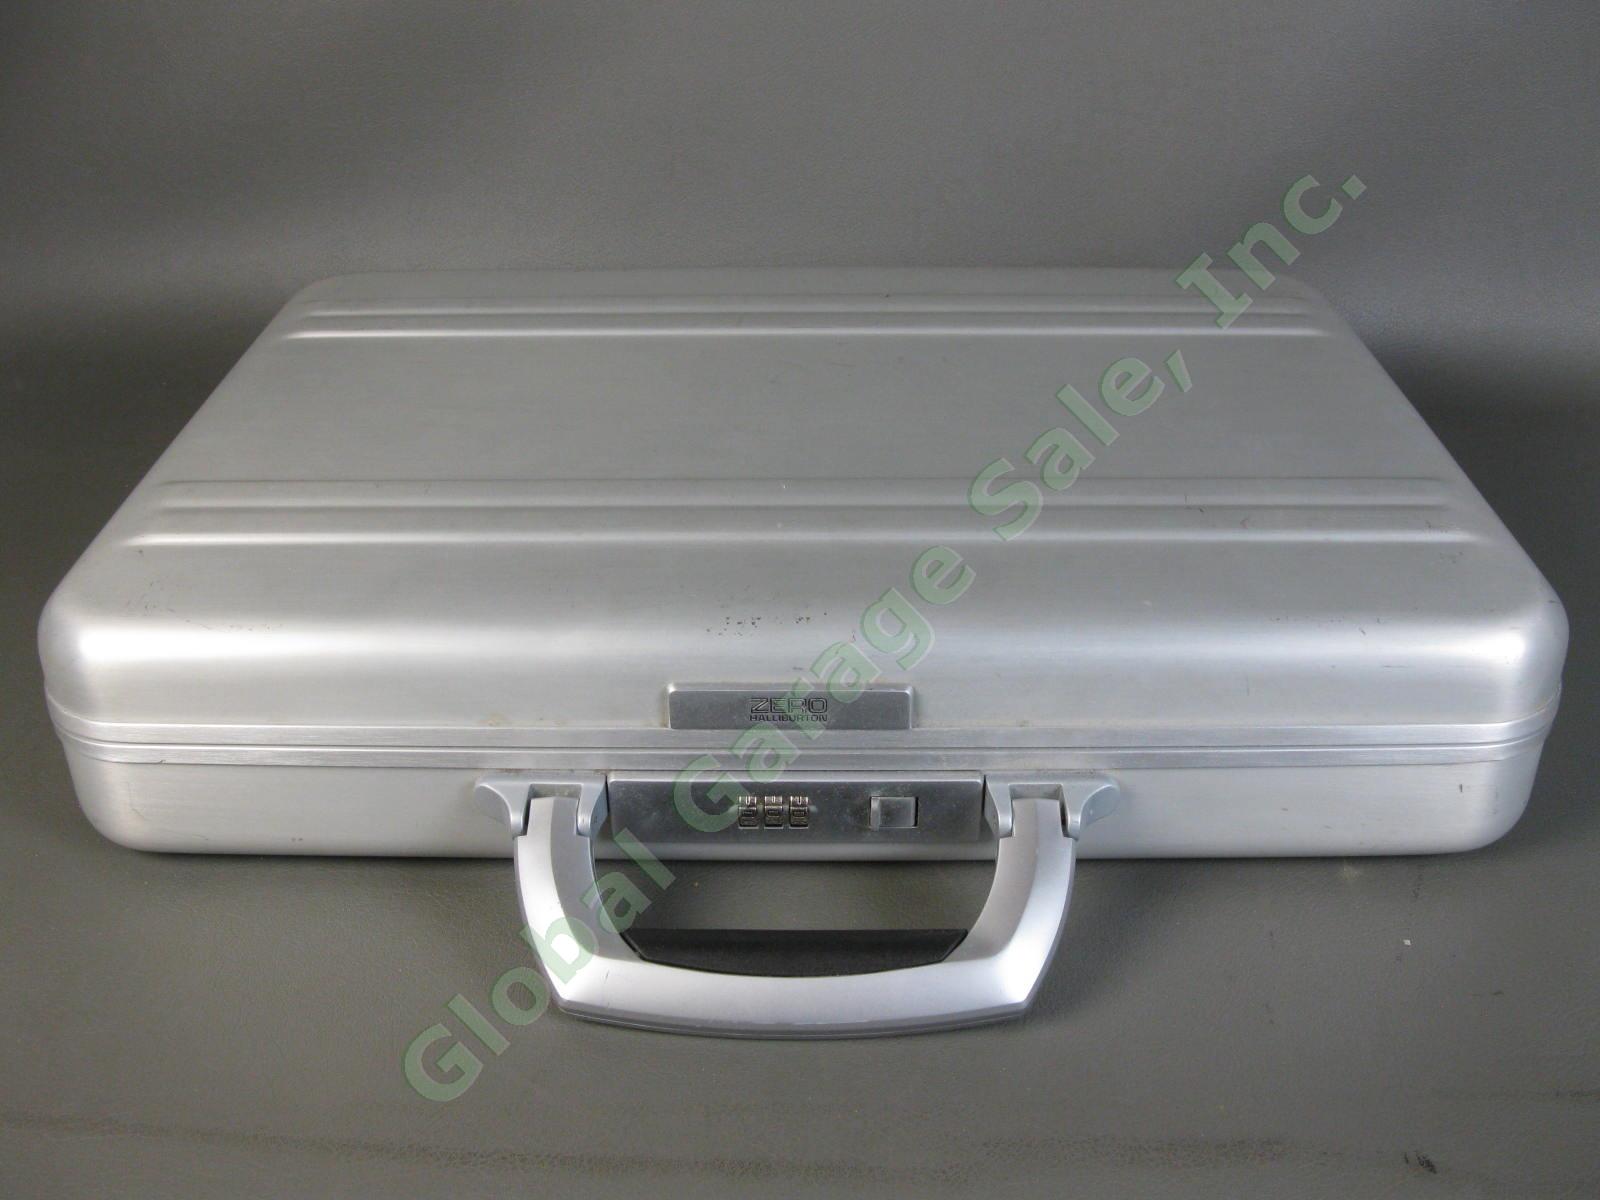 Halliburton ZERO Aluminum Briefcase 18"x13"x3" Combo Lock Excellent Condition NR